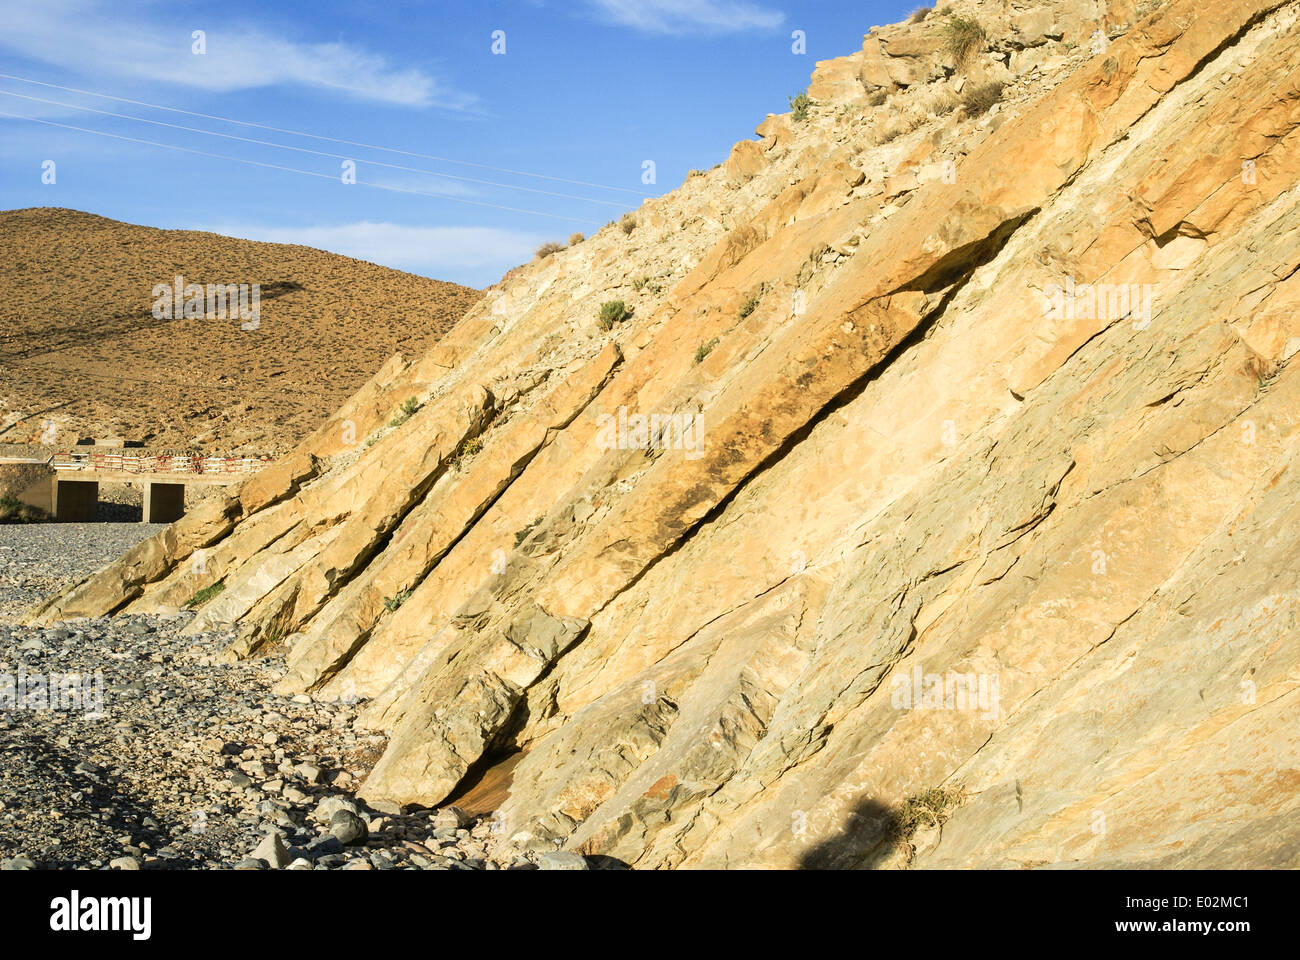 Geología - fallo strike-slip. Fotografiado en Marruecos Foto de stock